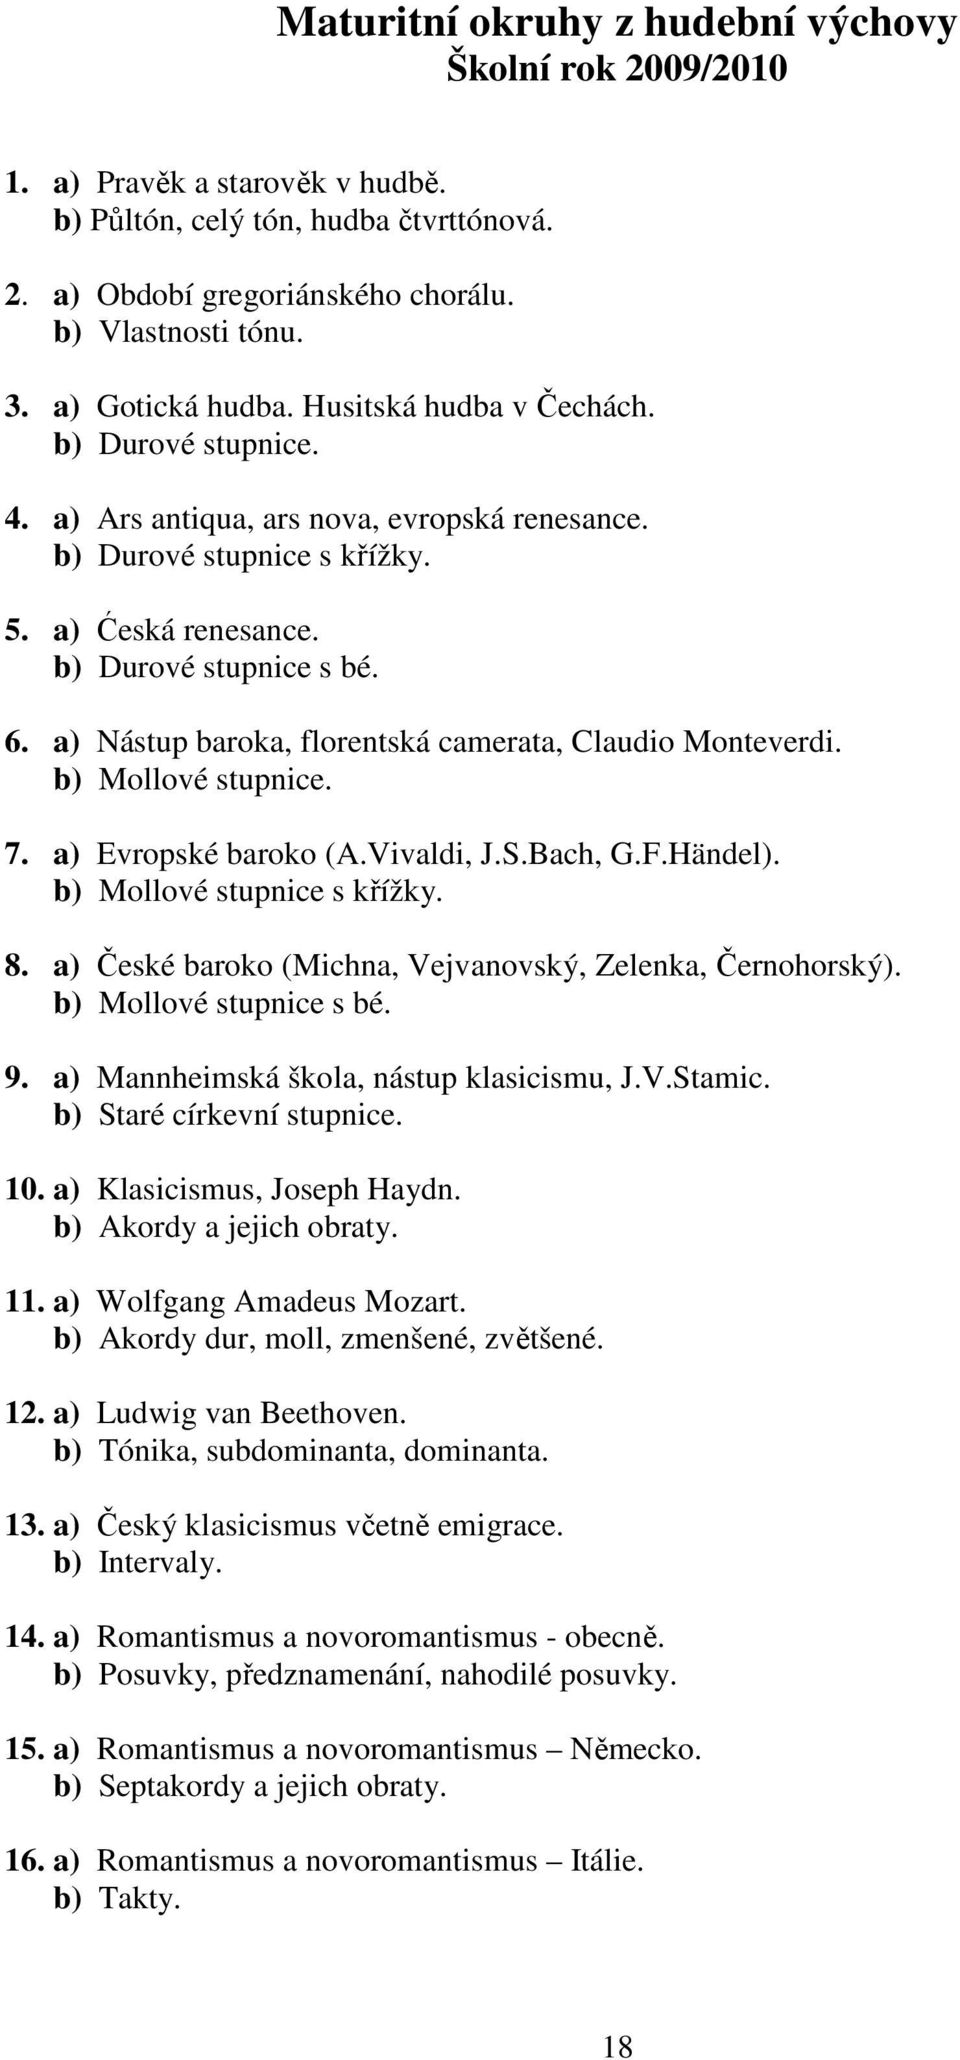 a) Nástup baroka, florentská camerata, Claudio Monteverdi. b) Mollové stupnice. 7. a) Evropské baroko (A.Vivaldi, J.S.Bach, G.F.Händel). b) Mollové stupnice s křížky. 8.